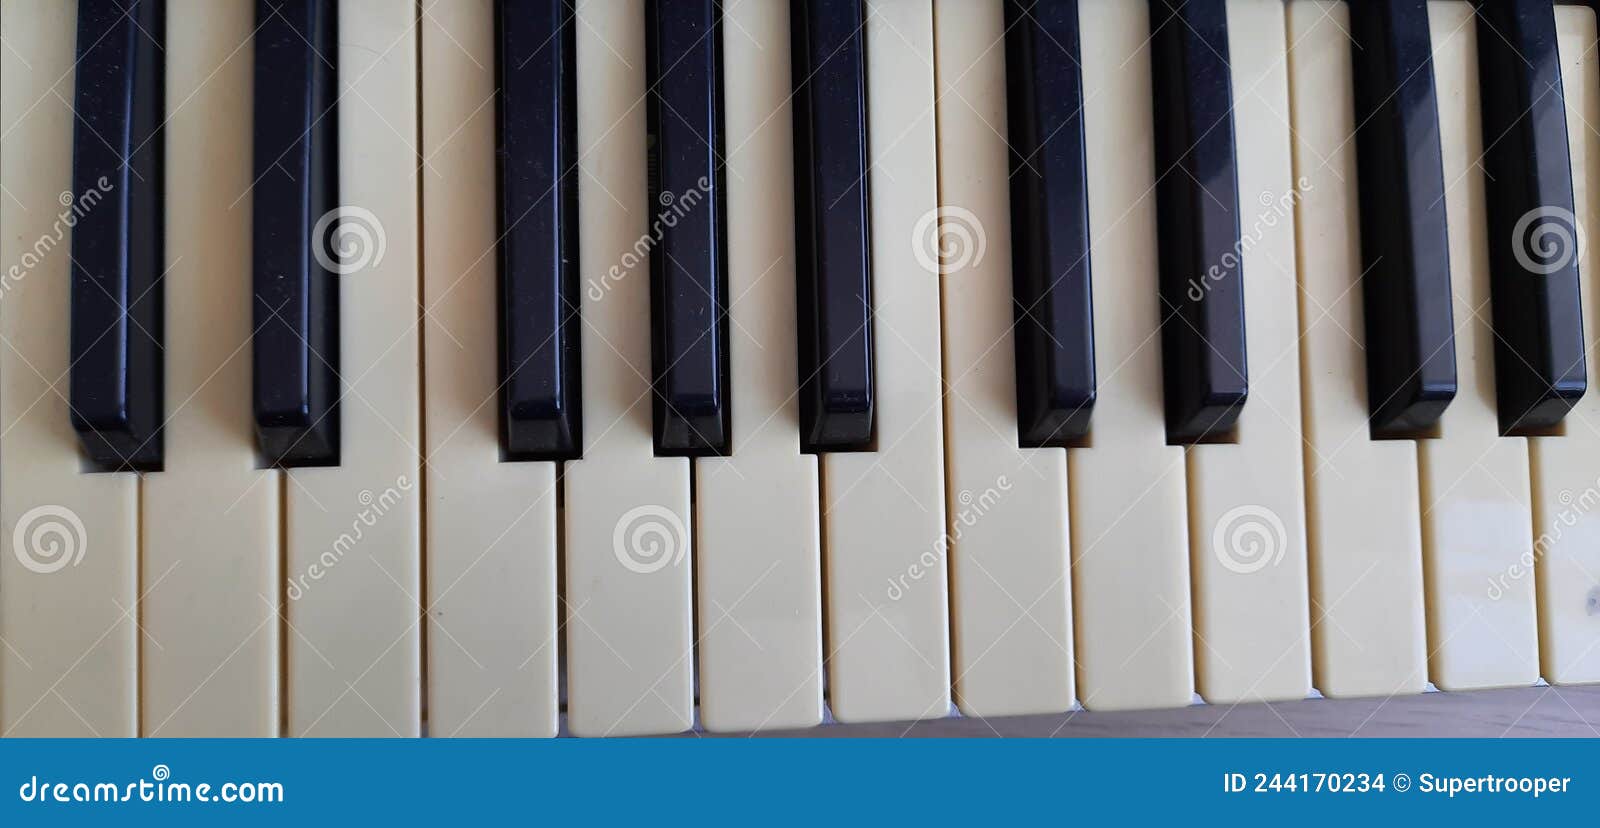 Sintetizador De Teclado Musical Electrónico Cerrar Teclado Nbsp Piano Digital Teclado Para Hacer Música Foto de archivo - Imagen de sintetizador, sonido: 244170234